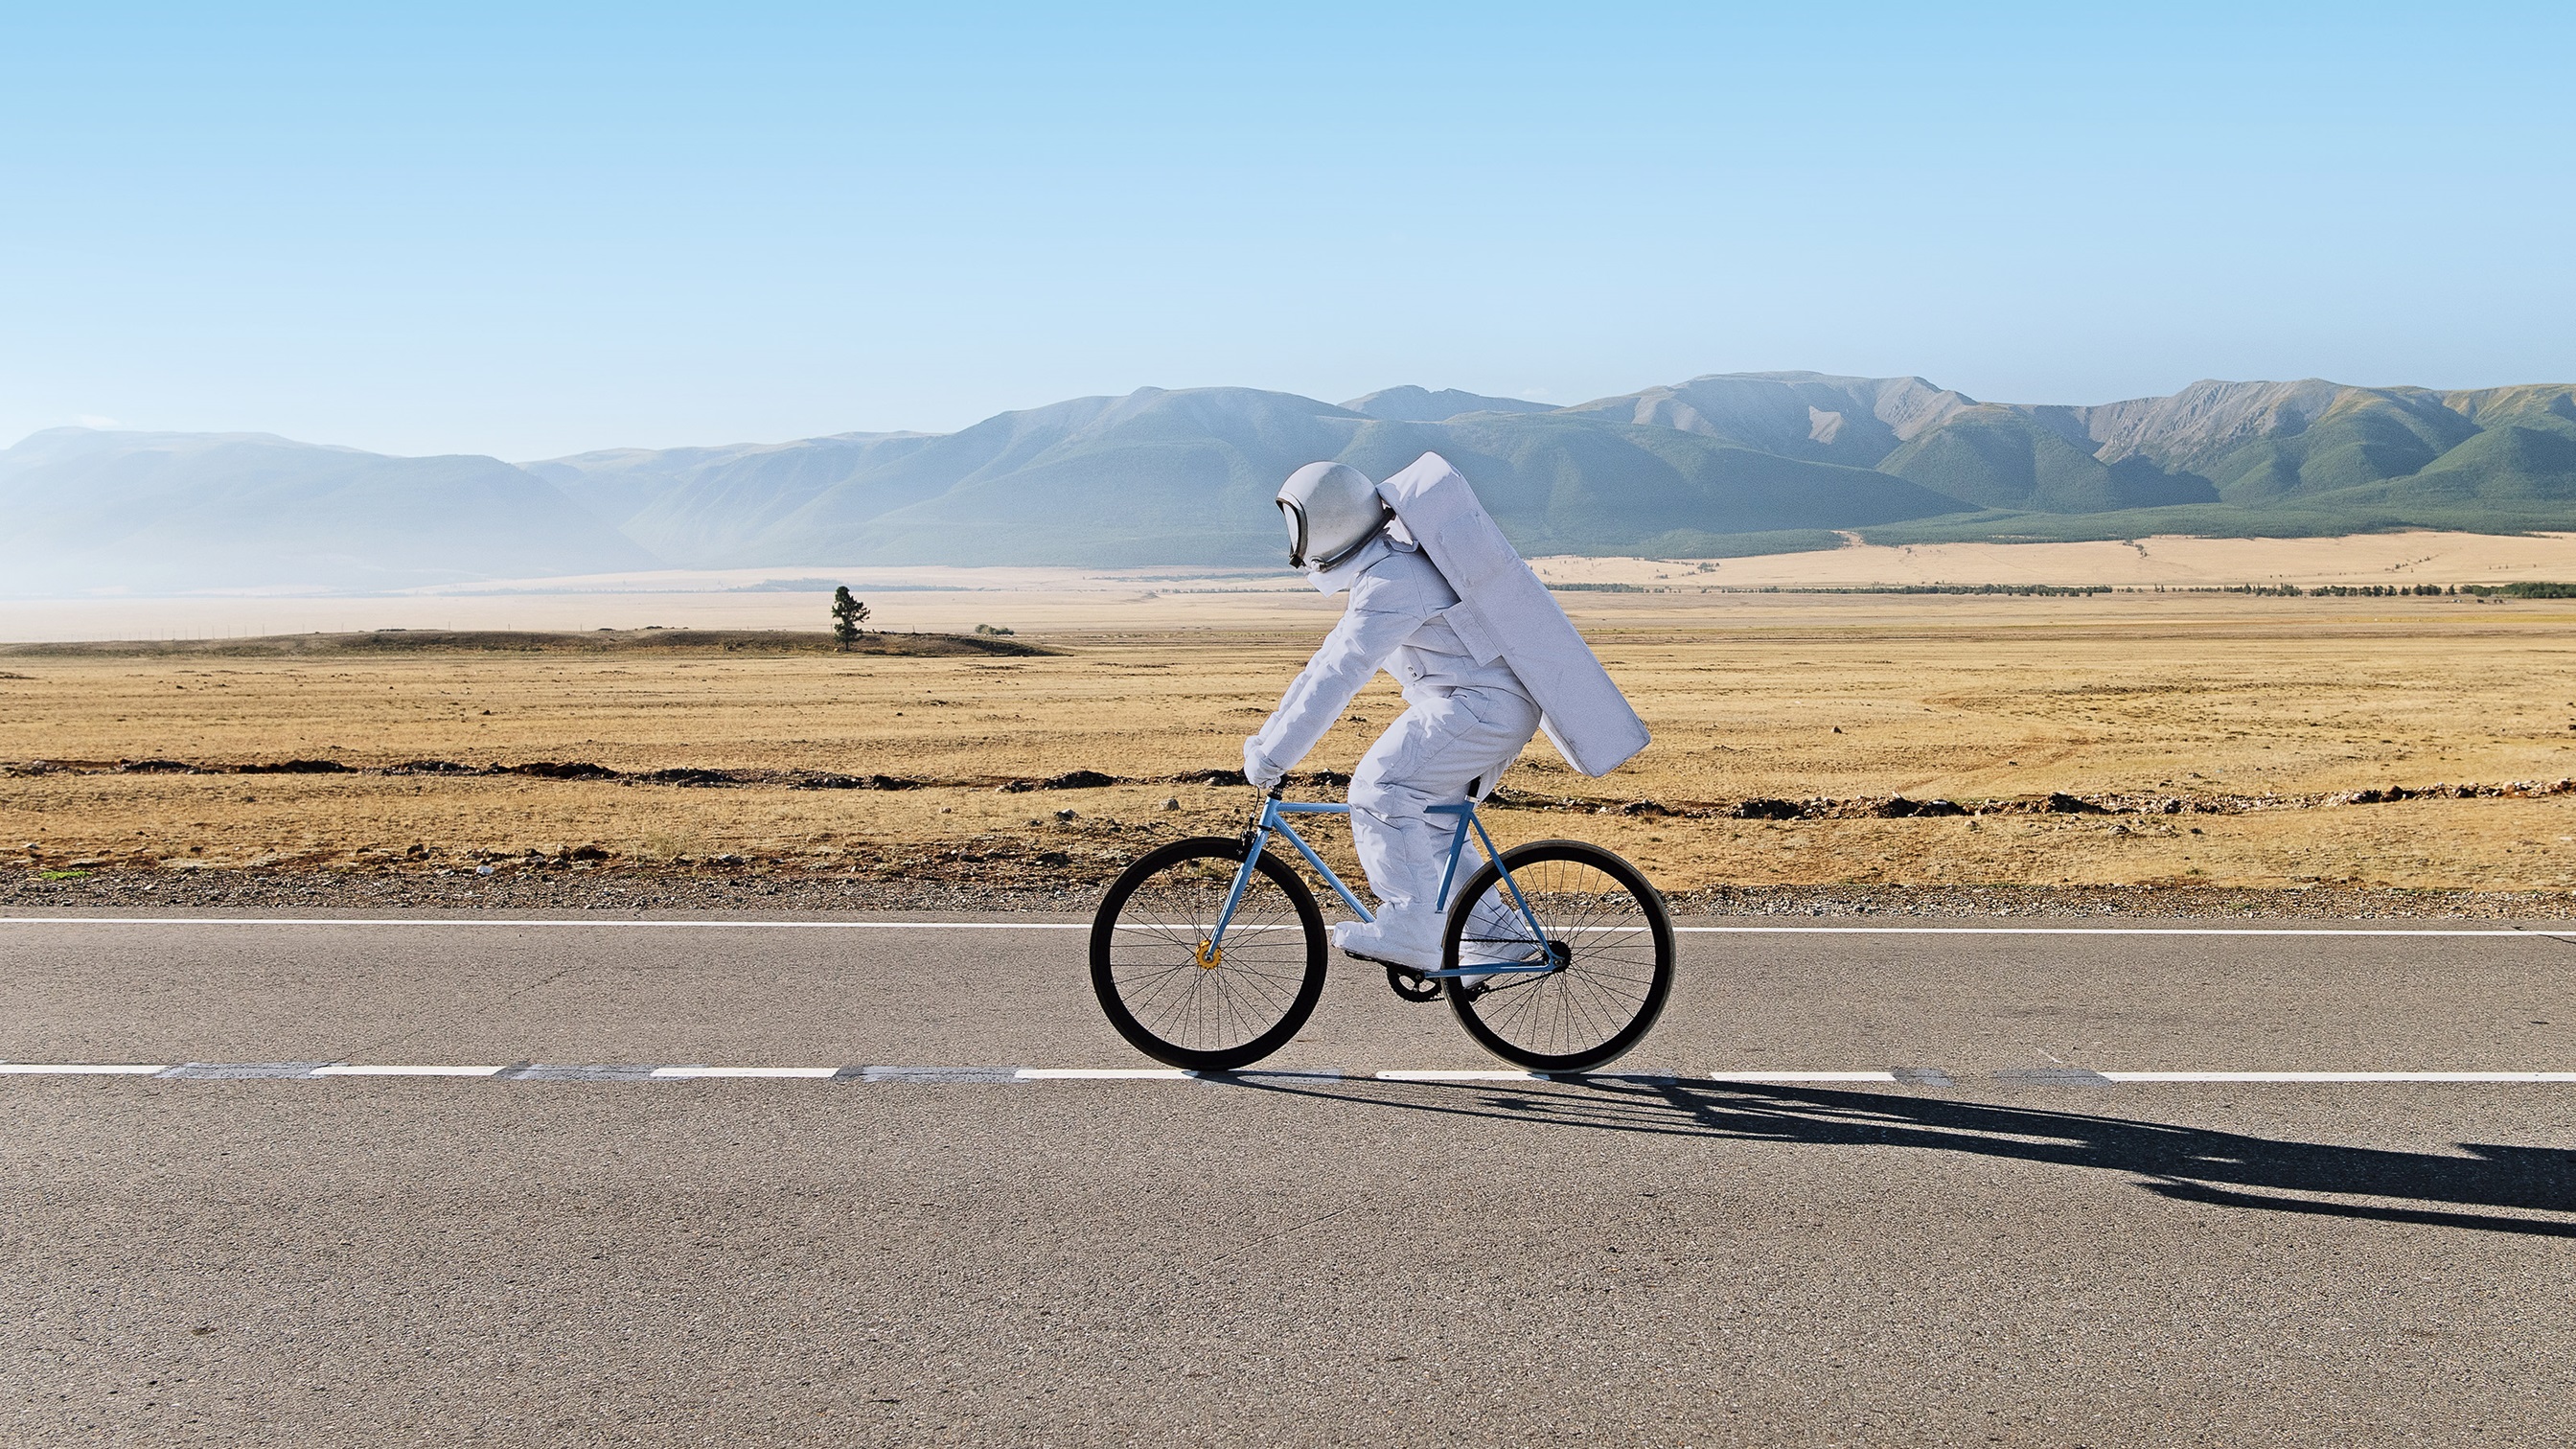 Ein Mann im Astronautanzug, der auf einem Fahrrad in der Wüste fährt